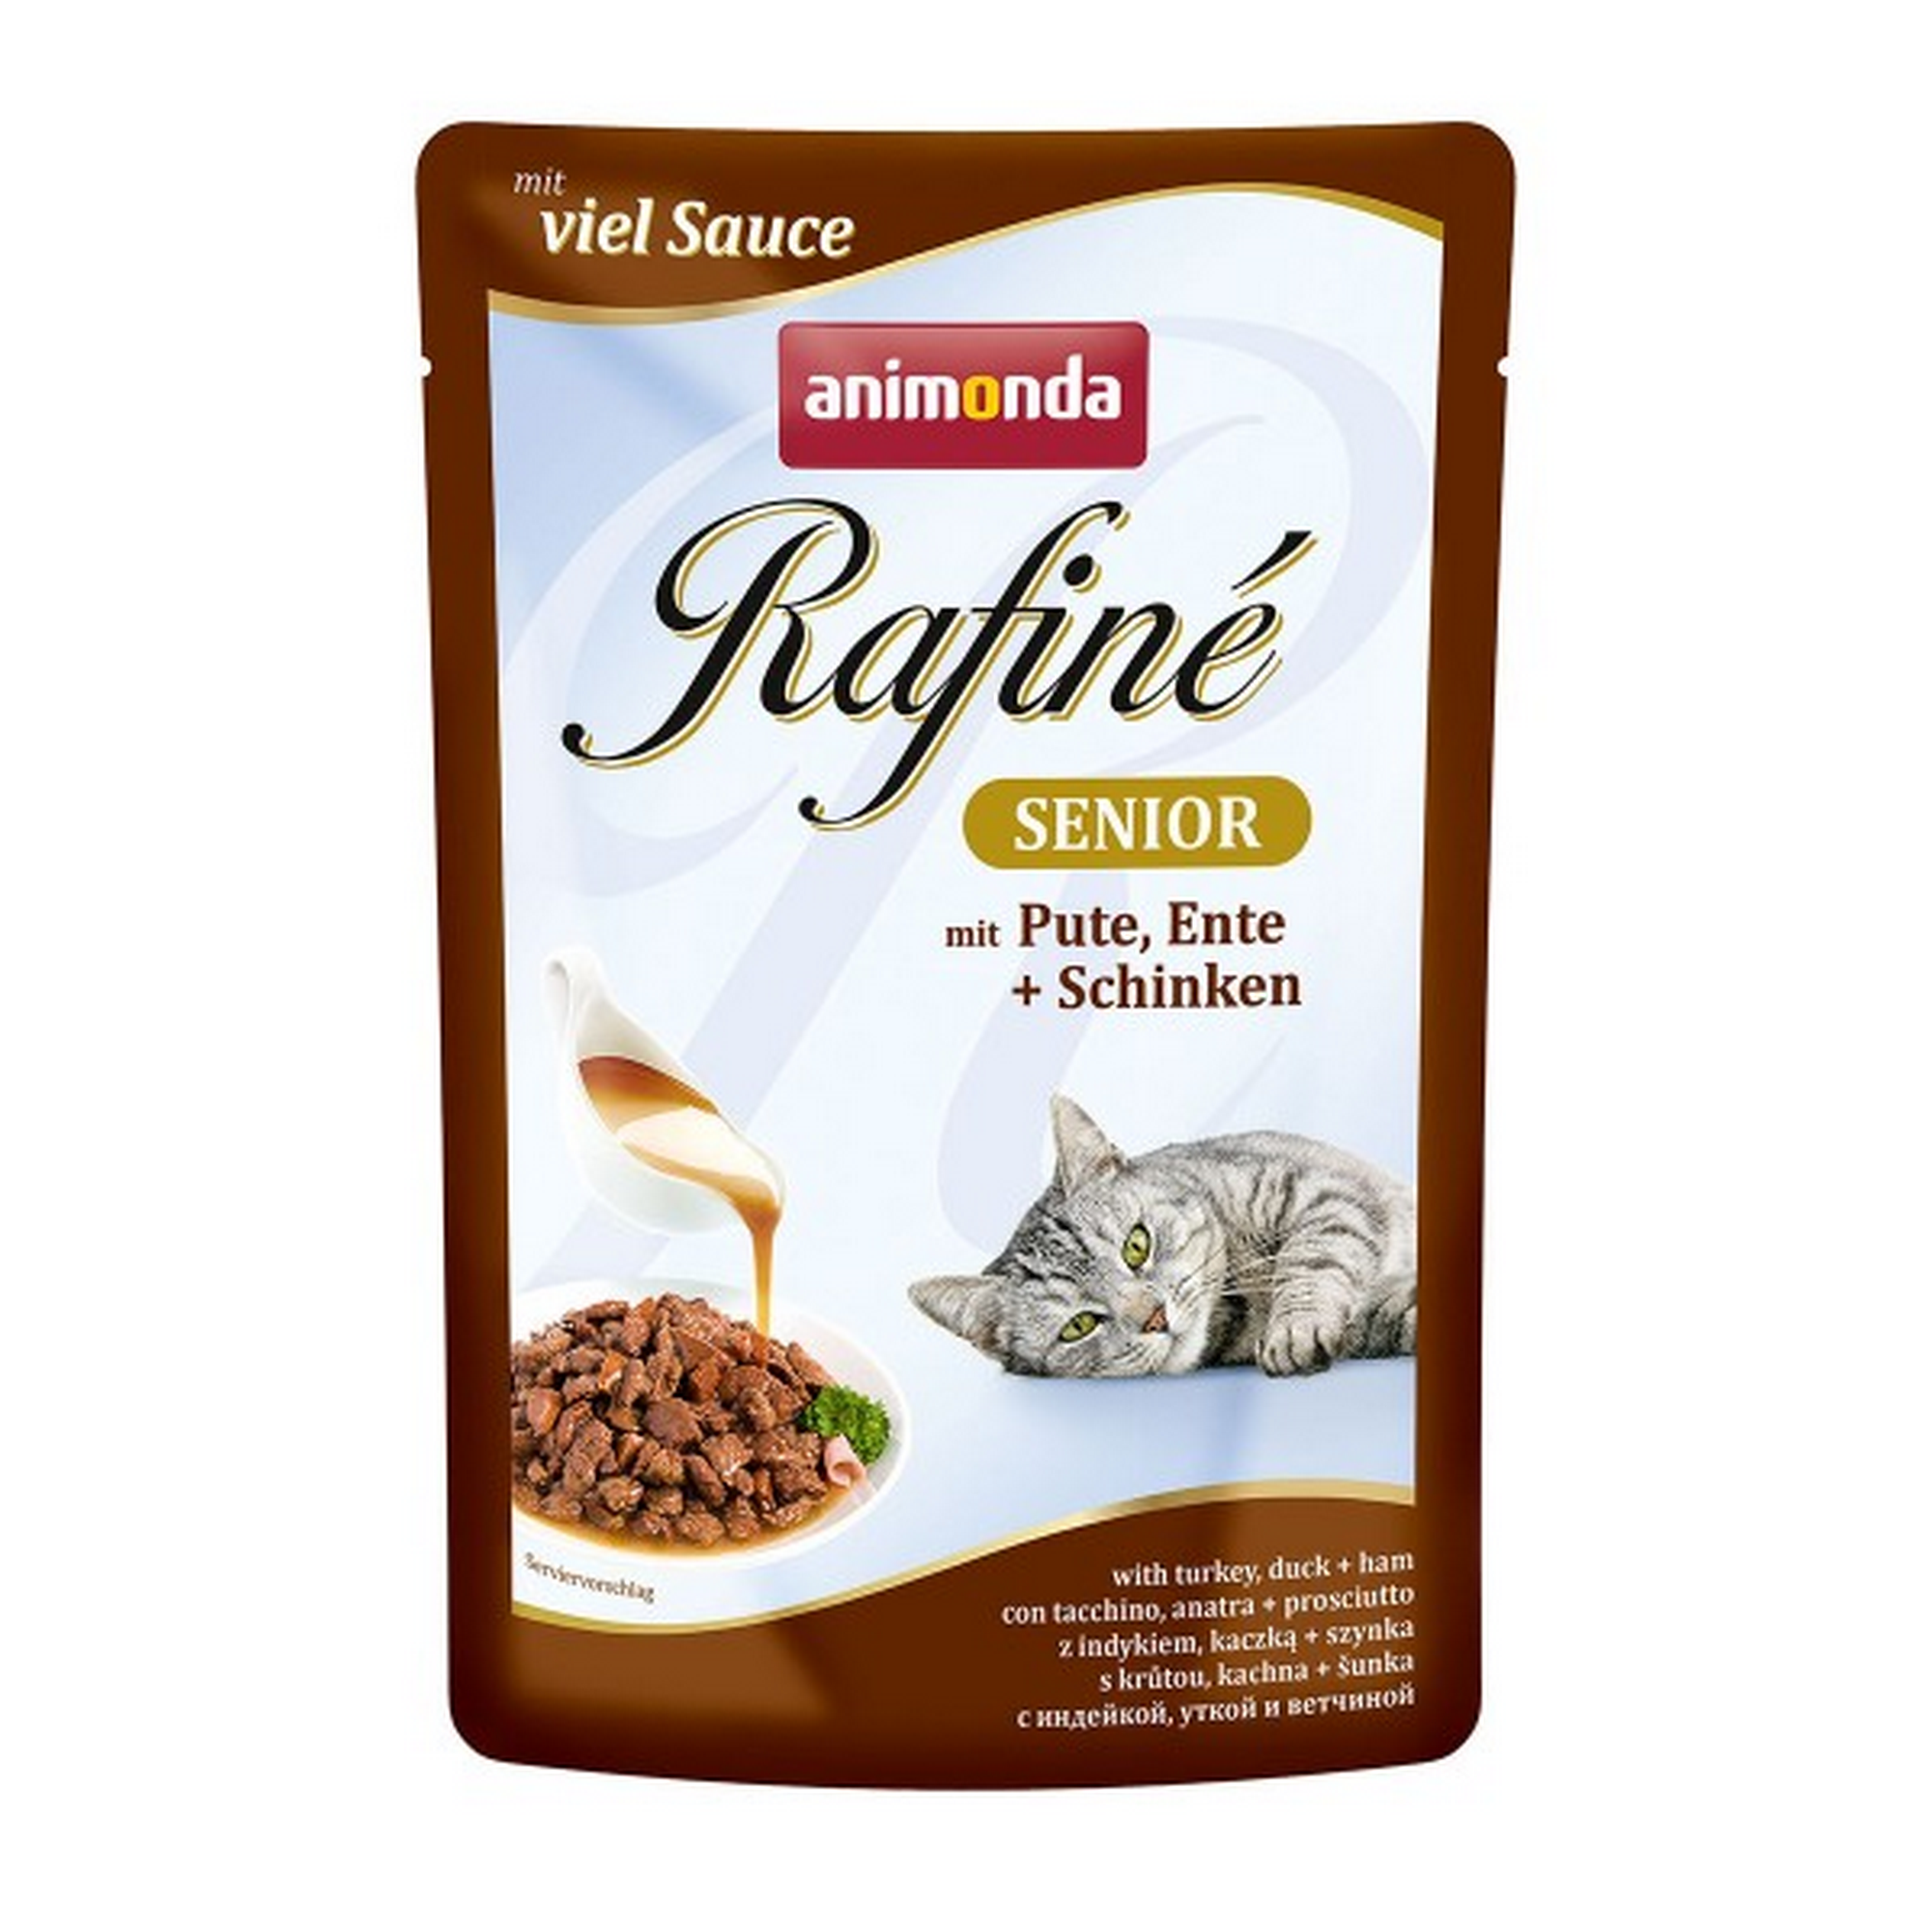 Katzennassfutter 'Rafiné' Senior mit Pute, Ente & Schinken 100 g + product picture